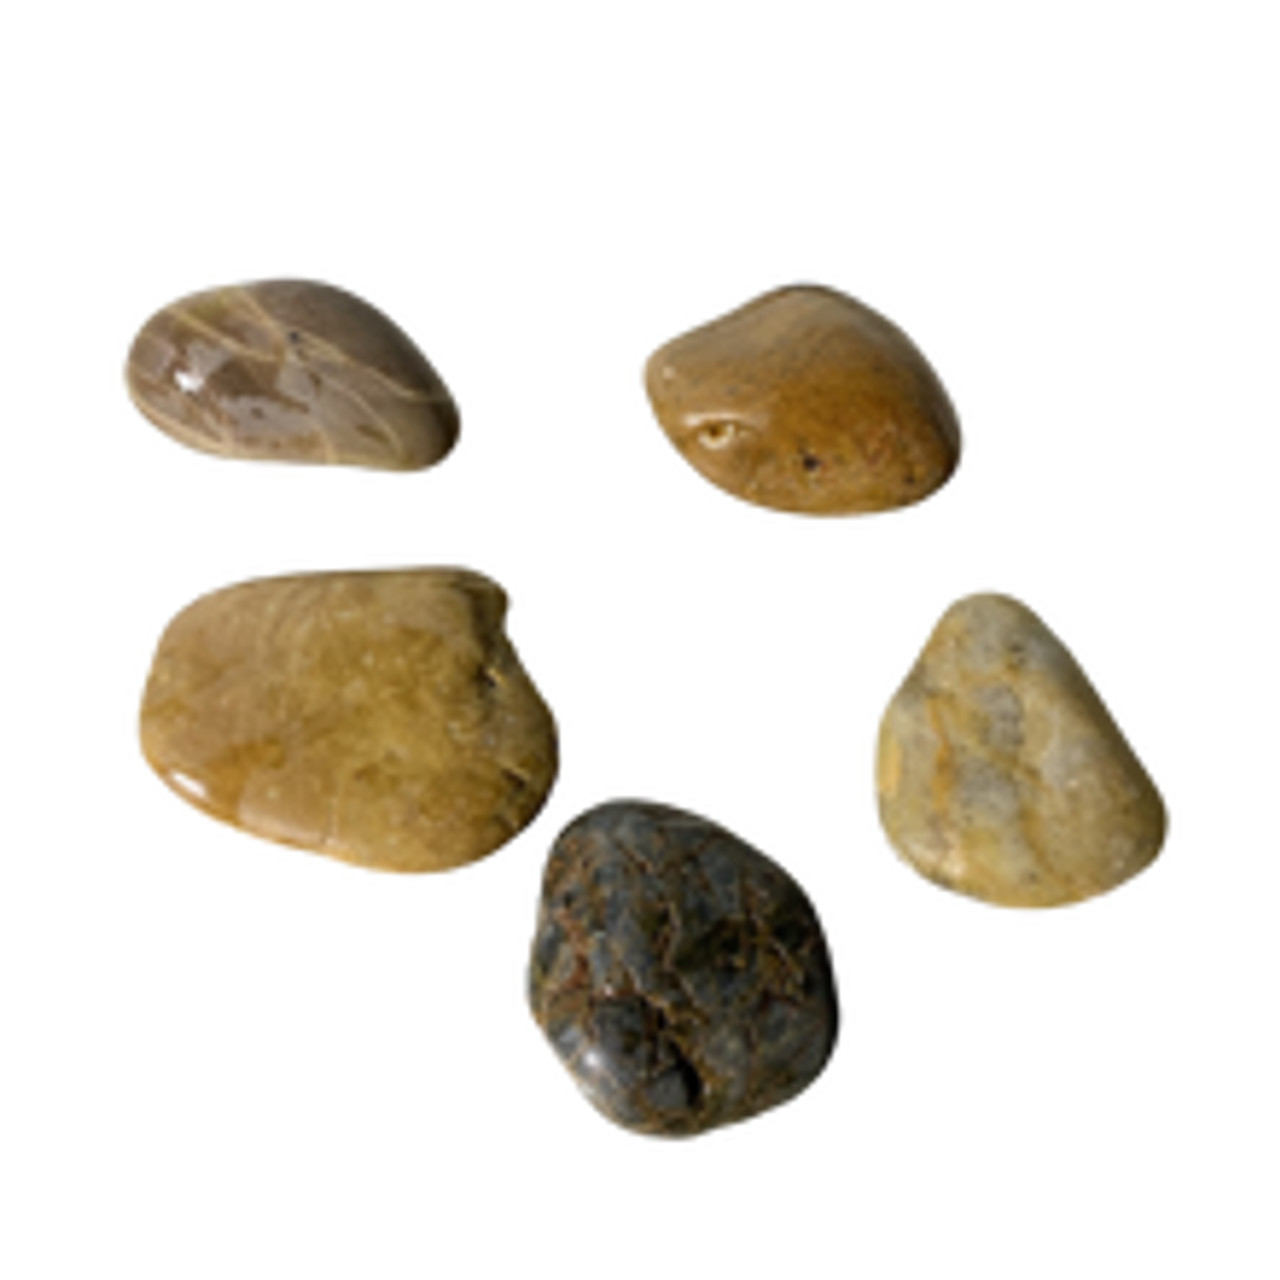 Polished River Stones (Set of 5)